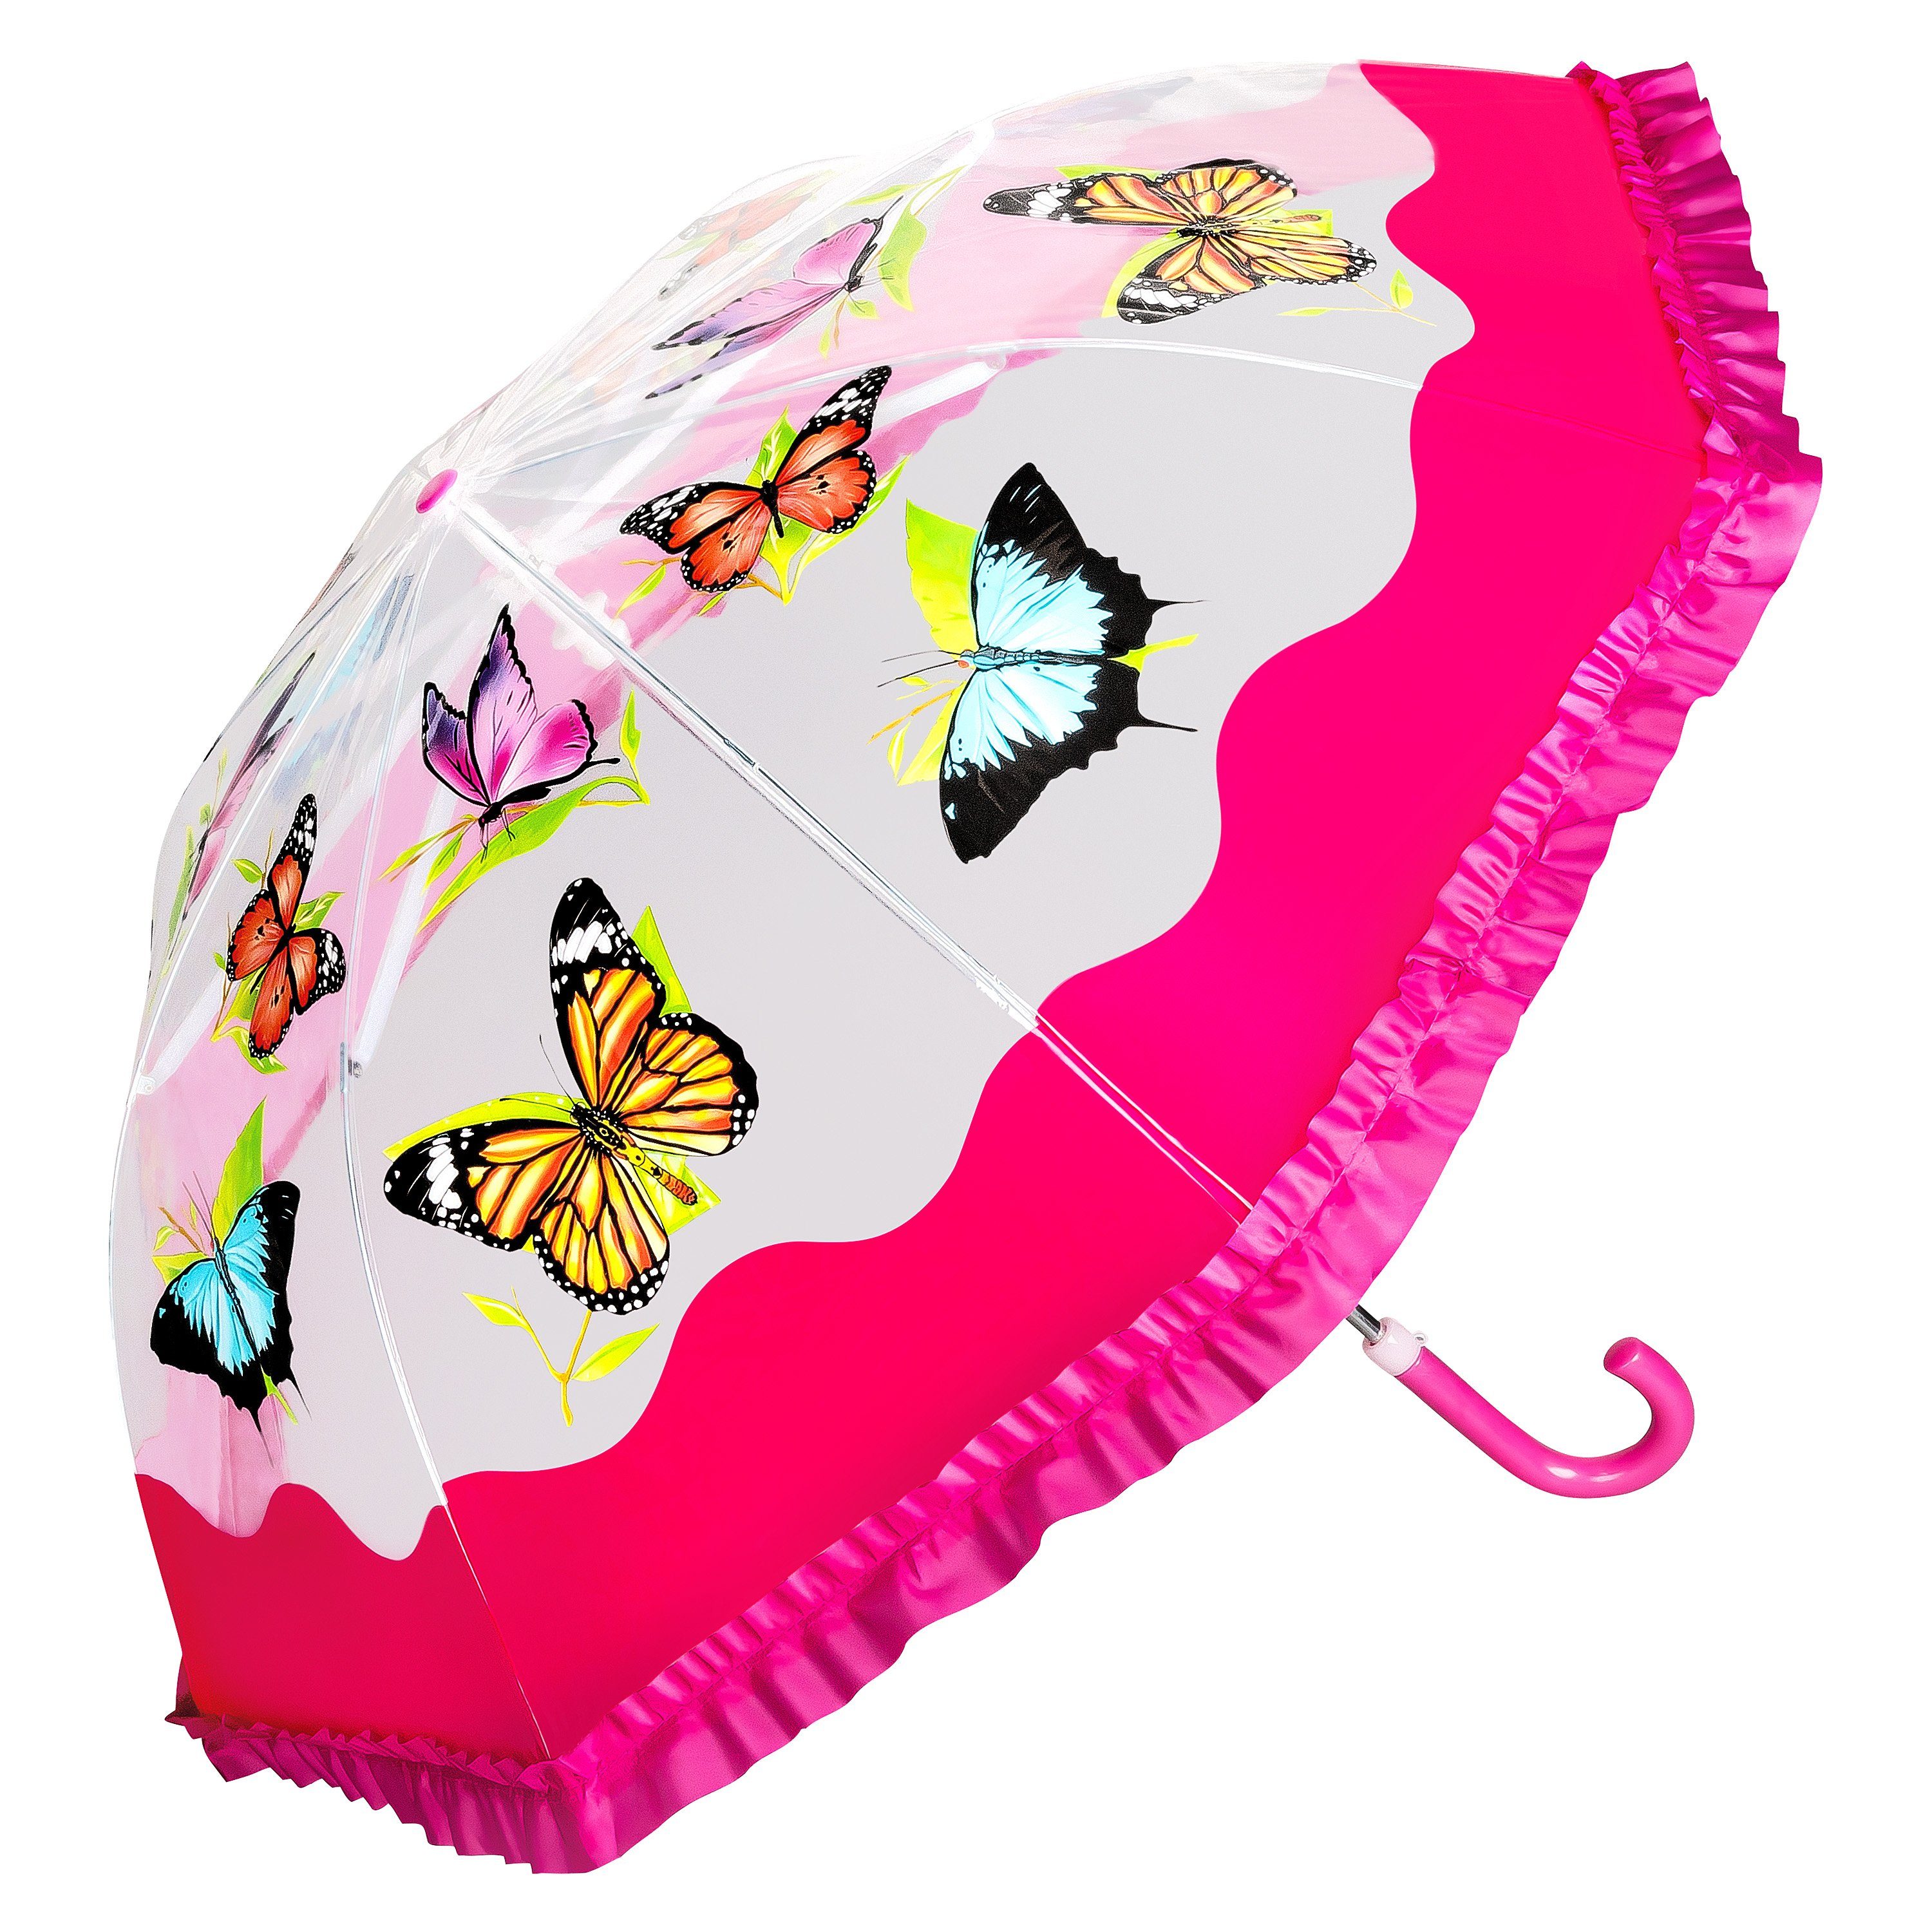 Top-Kundenbewertung von Lilienfeld Mädchen Butterfly 8 Jahre, Junge Schmetterling Stockregenschirm Rüschenkante Kinderschirm ca. bis